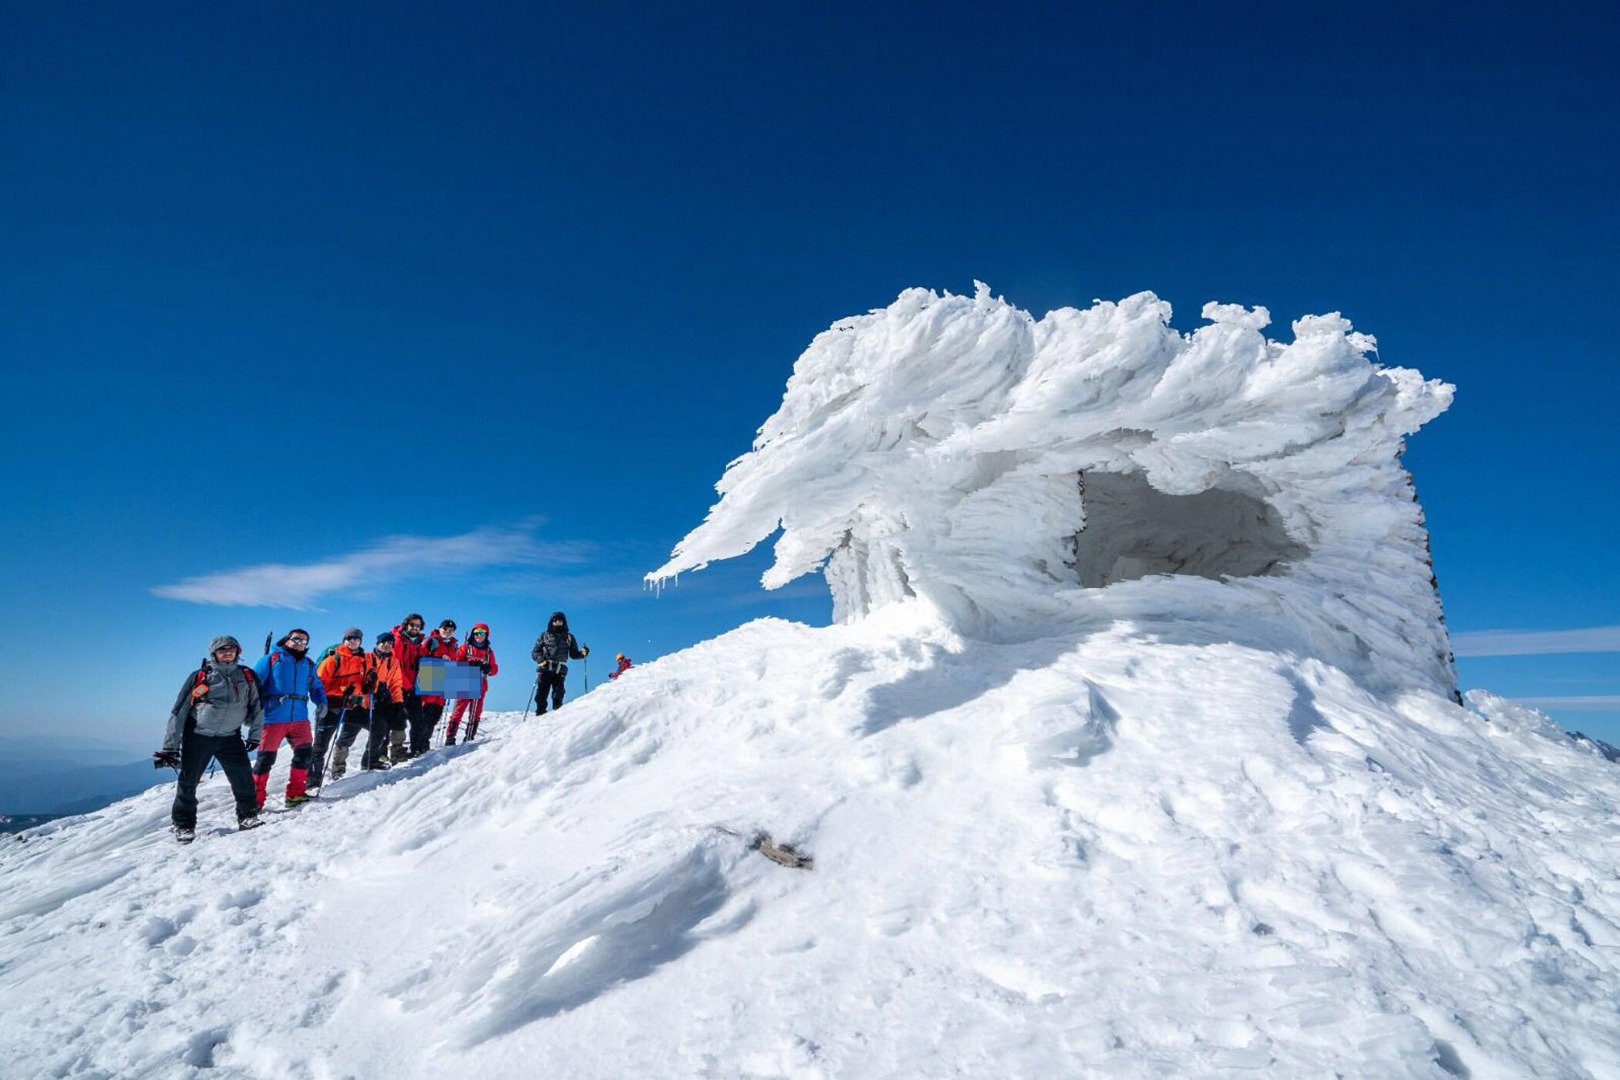 Sandras Dağı'nın zirvesinde taş barınak buz tuttu